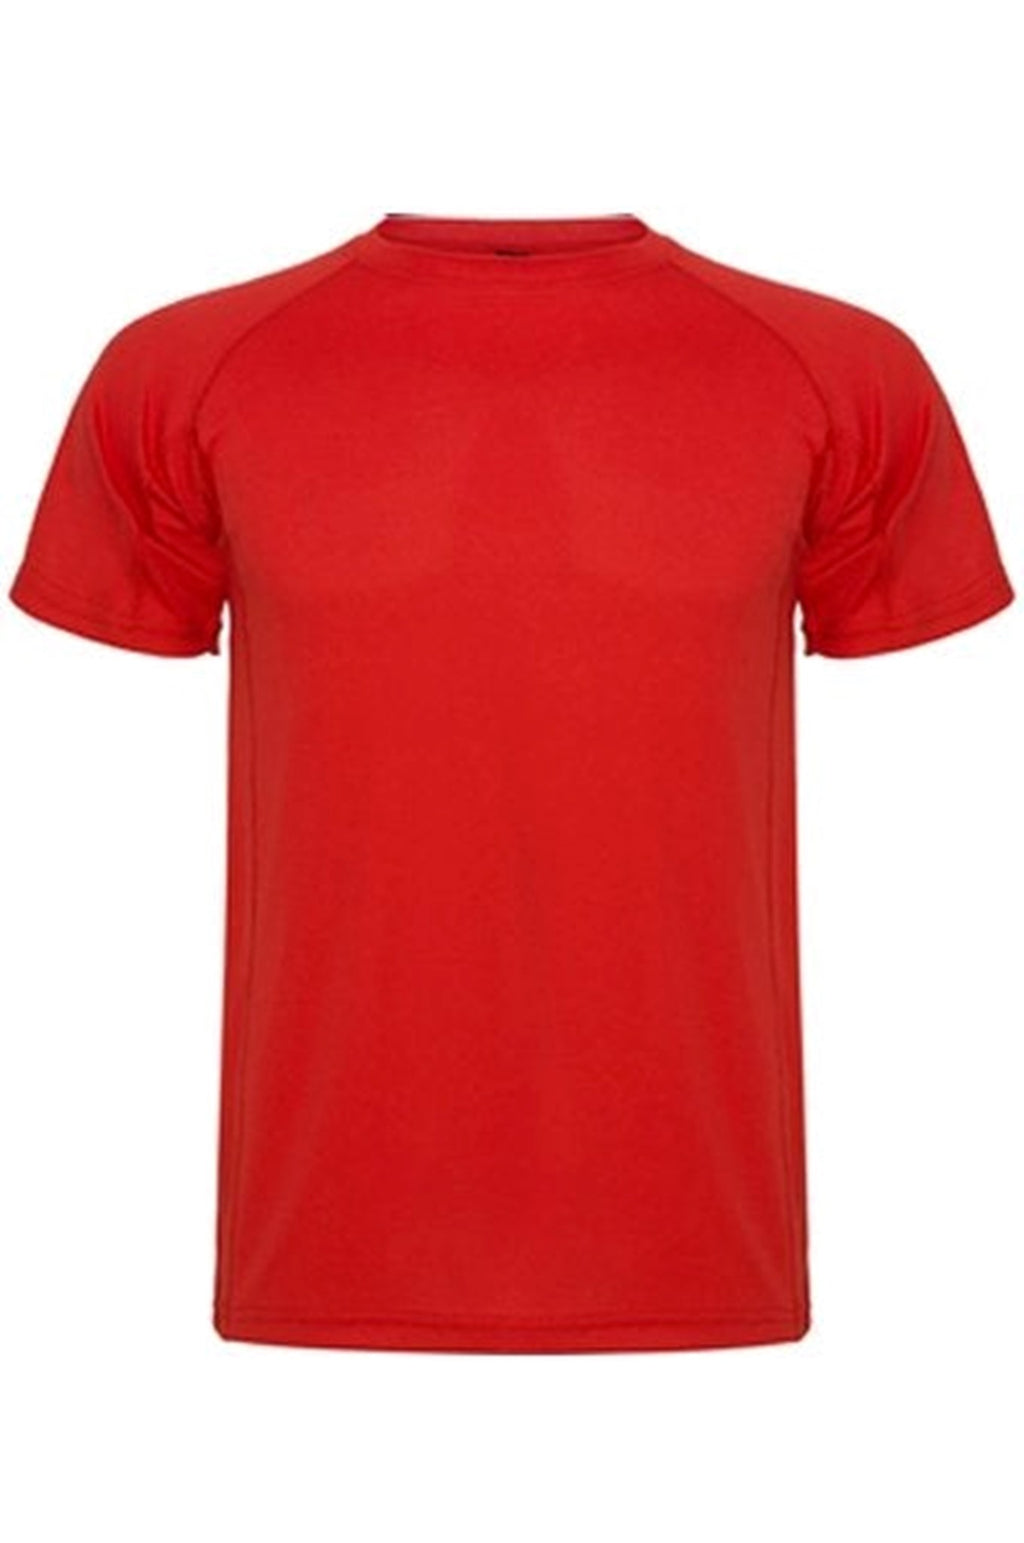 Trenings T-shirt - Rød